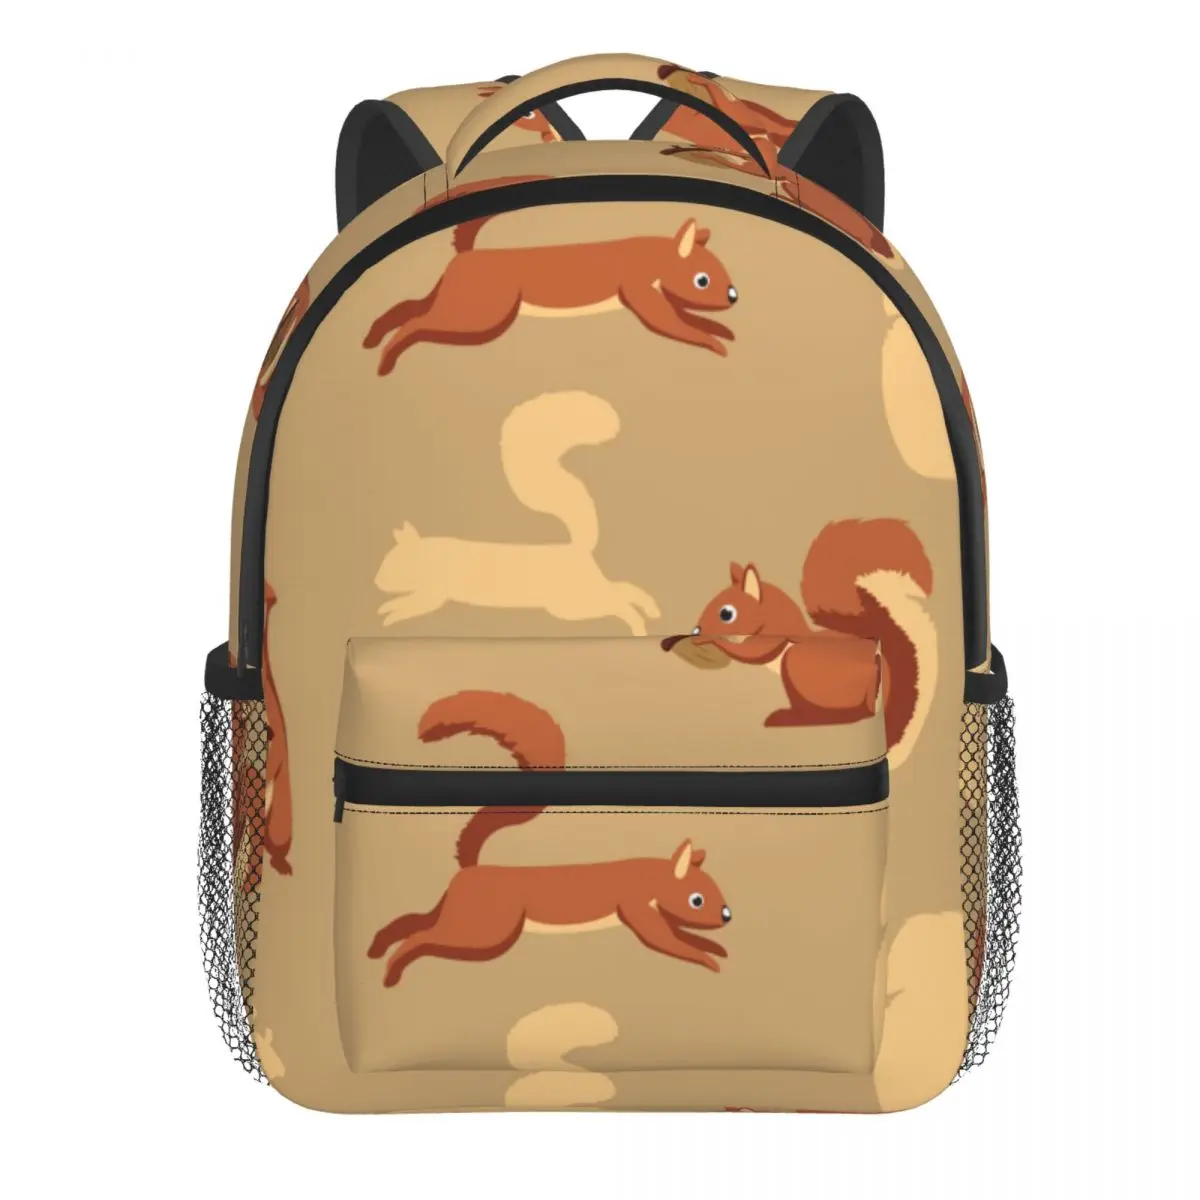 Cute Squirrel Baby Backpack Kindergarten Schoolbag Kids Children School Bag